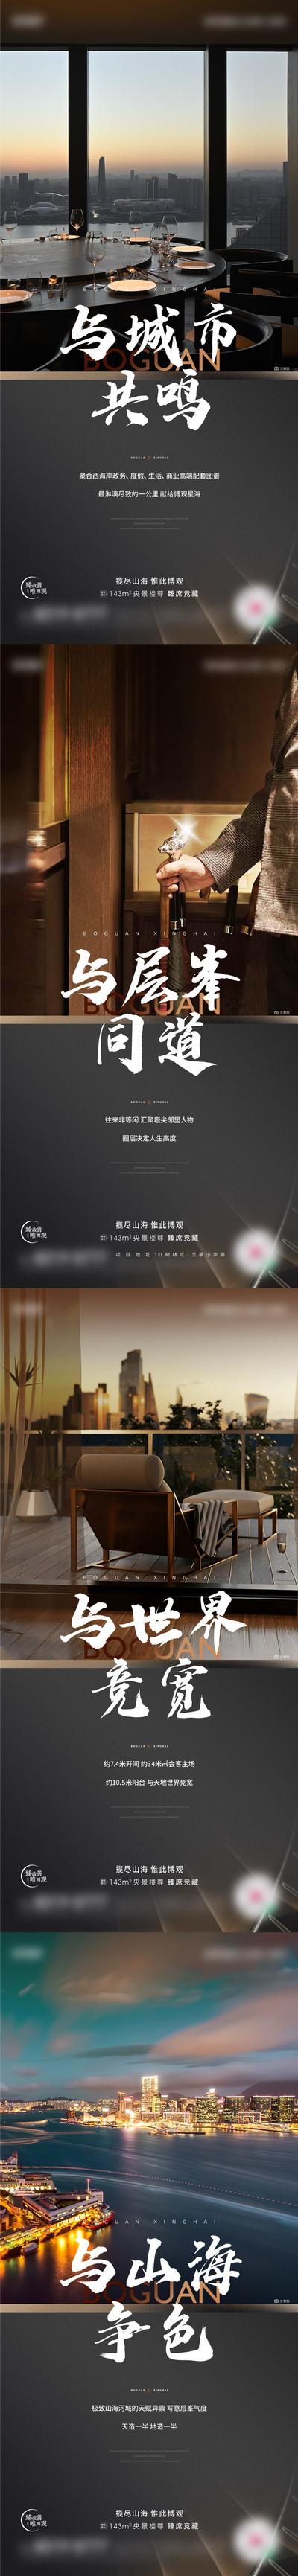 南门网 广告 海报 地产 价值点 城市 刷屏 黑色 阳台 圈层 山海 系列